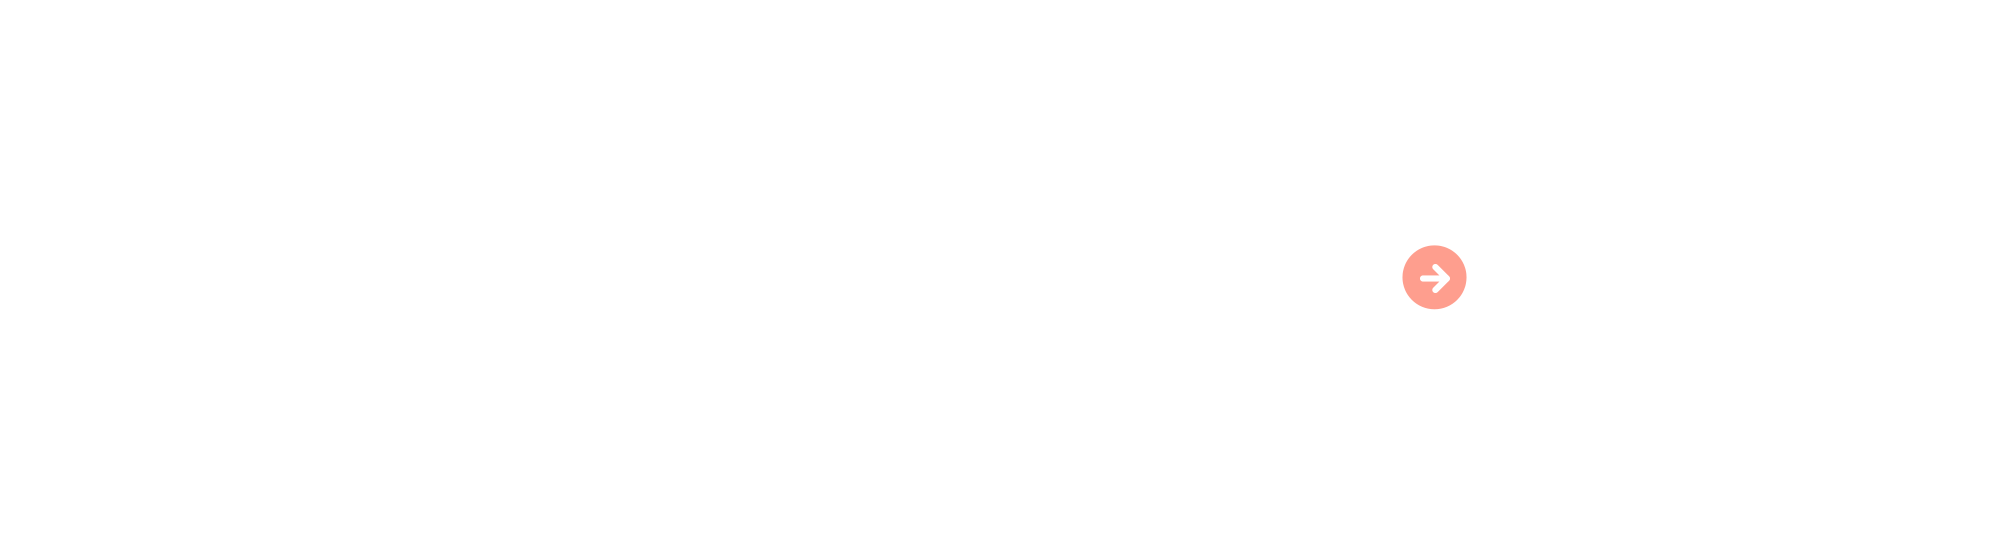 pc_recruit_bg